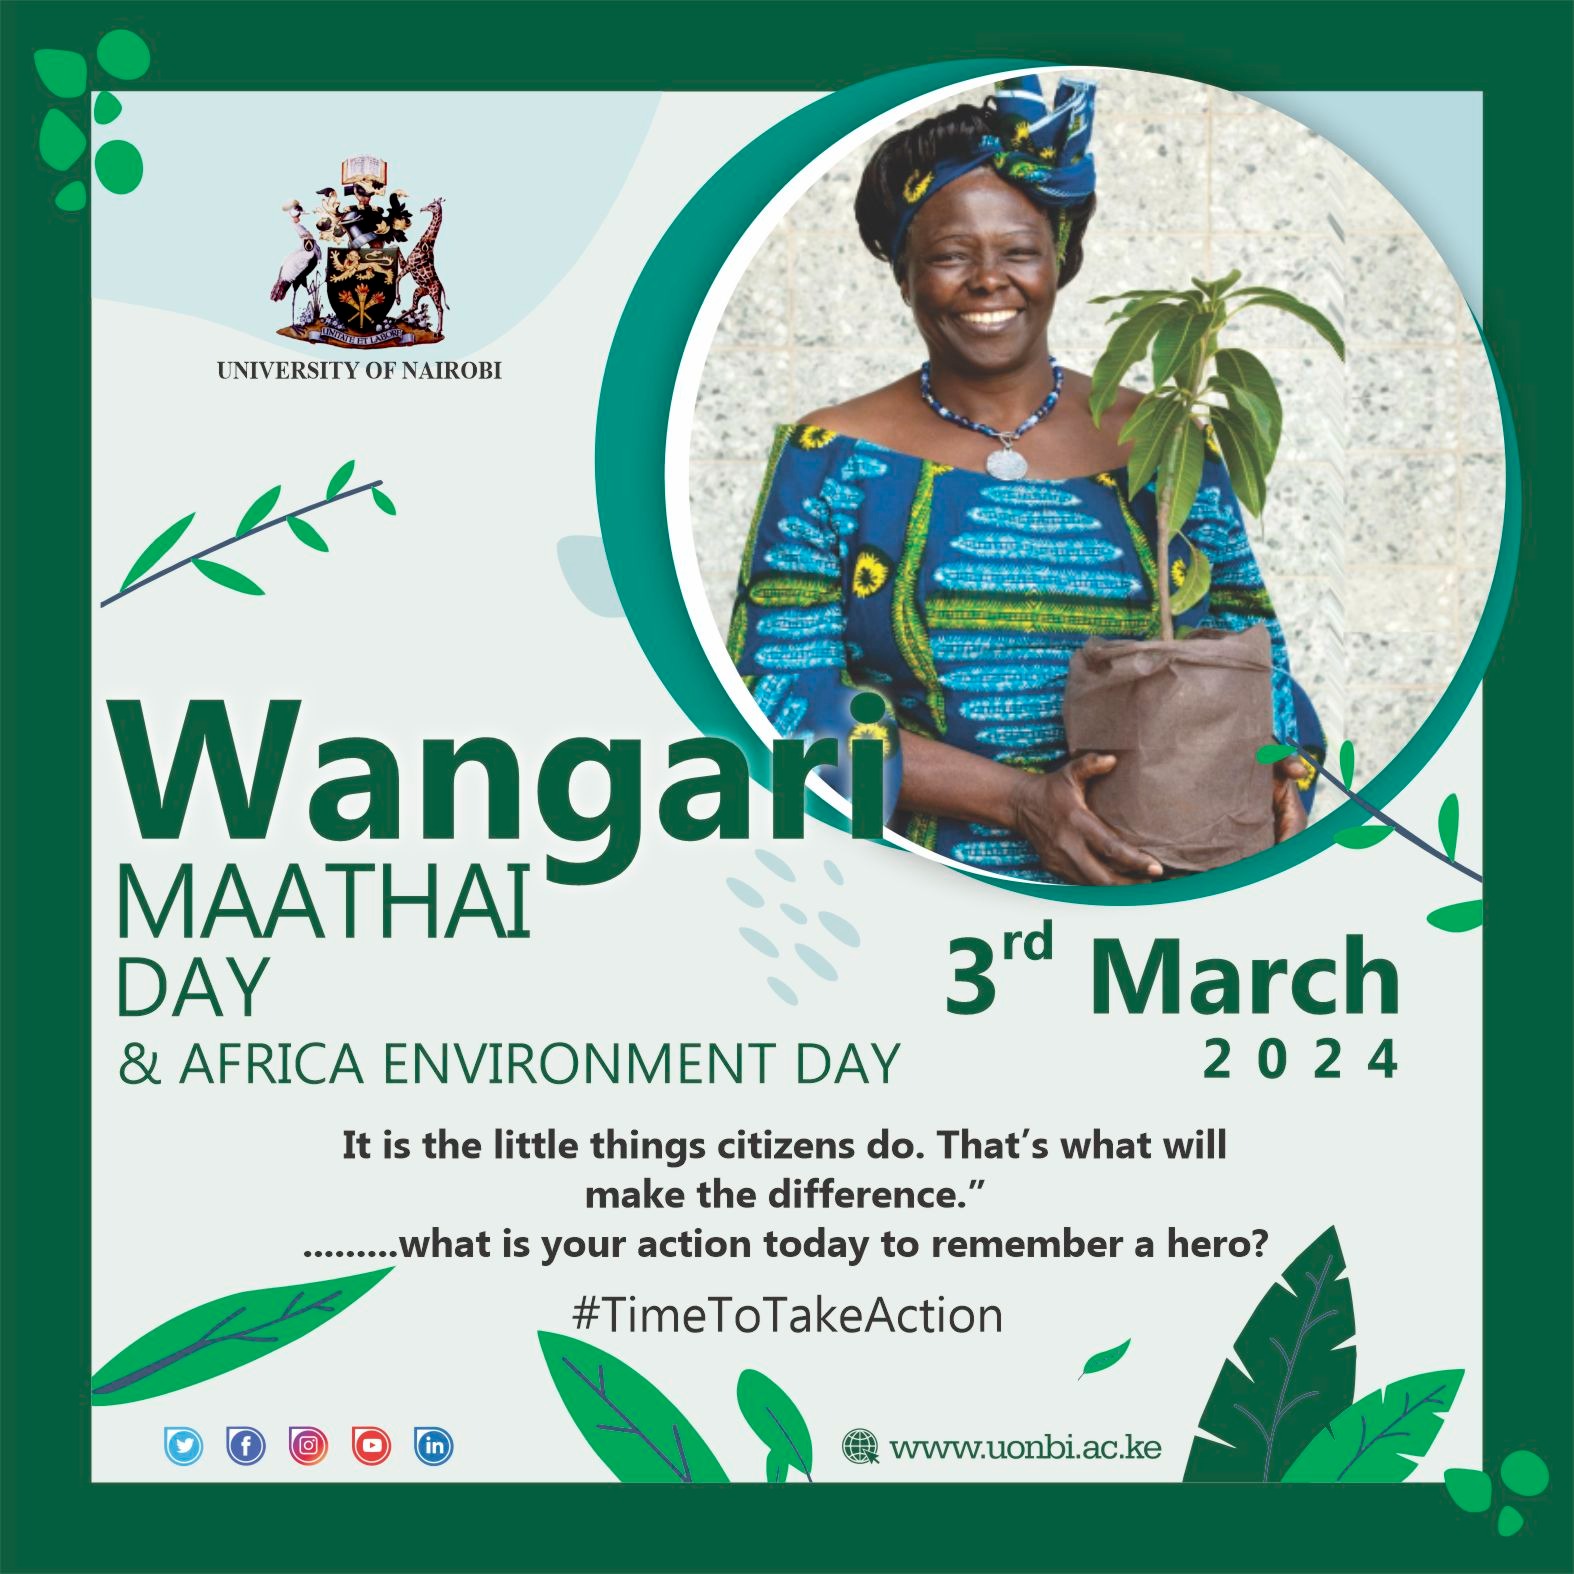 Wangari Maathai Day